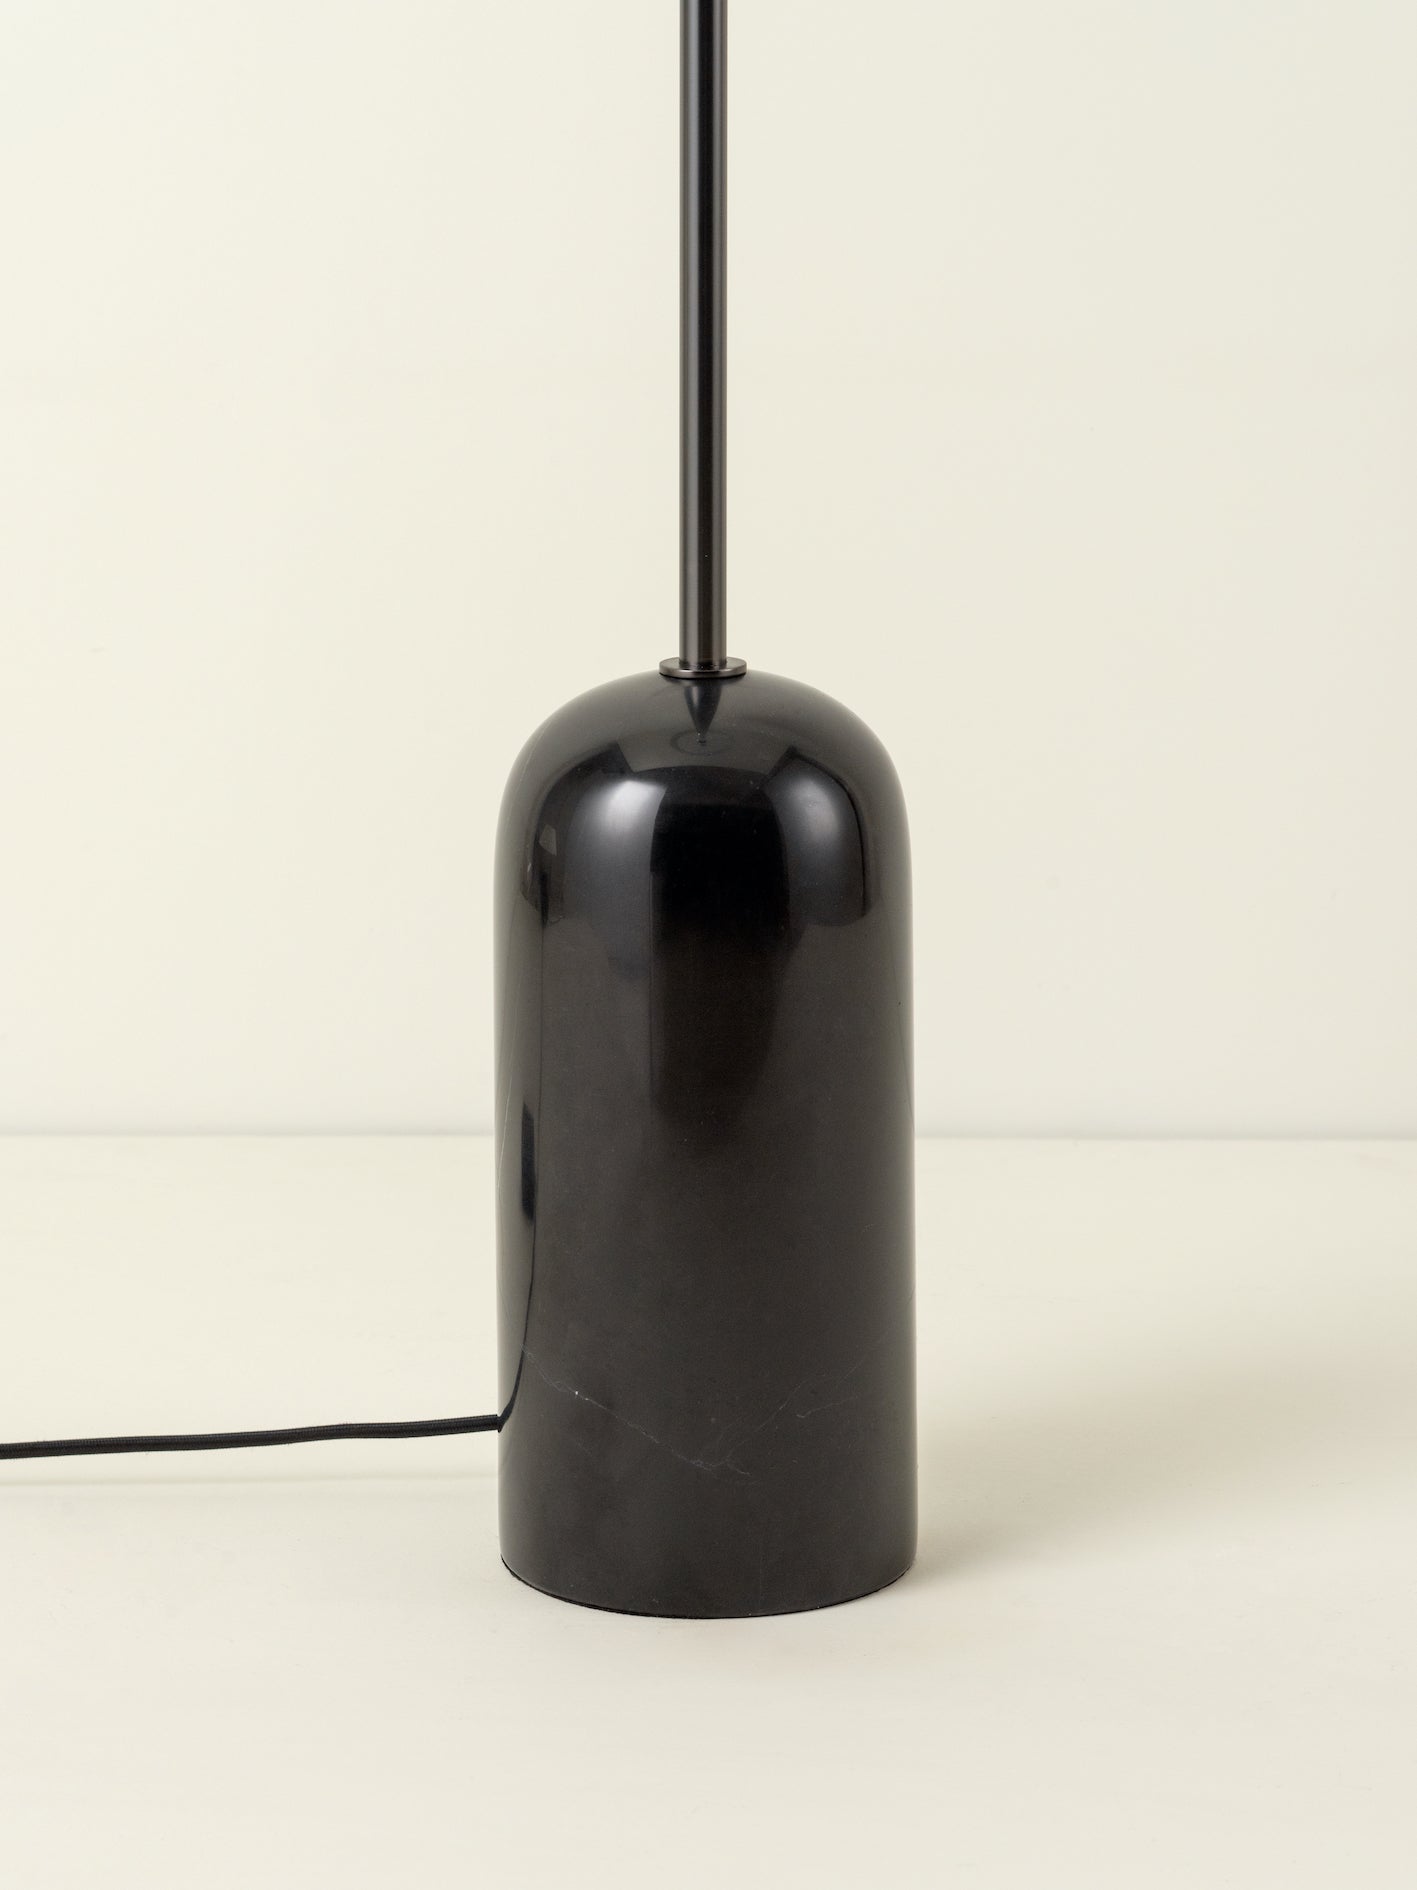 Penn - 1 light black marble and graphite silver floor lamp | Floor Lamp | Lights & Lamps | UK | Modern Affordable Designer Lighting